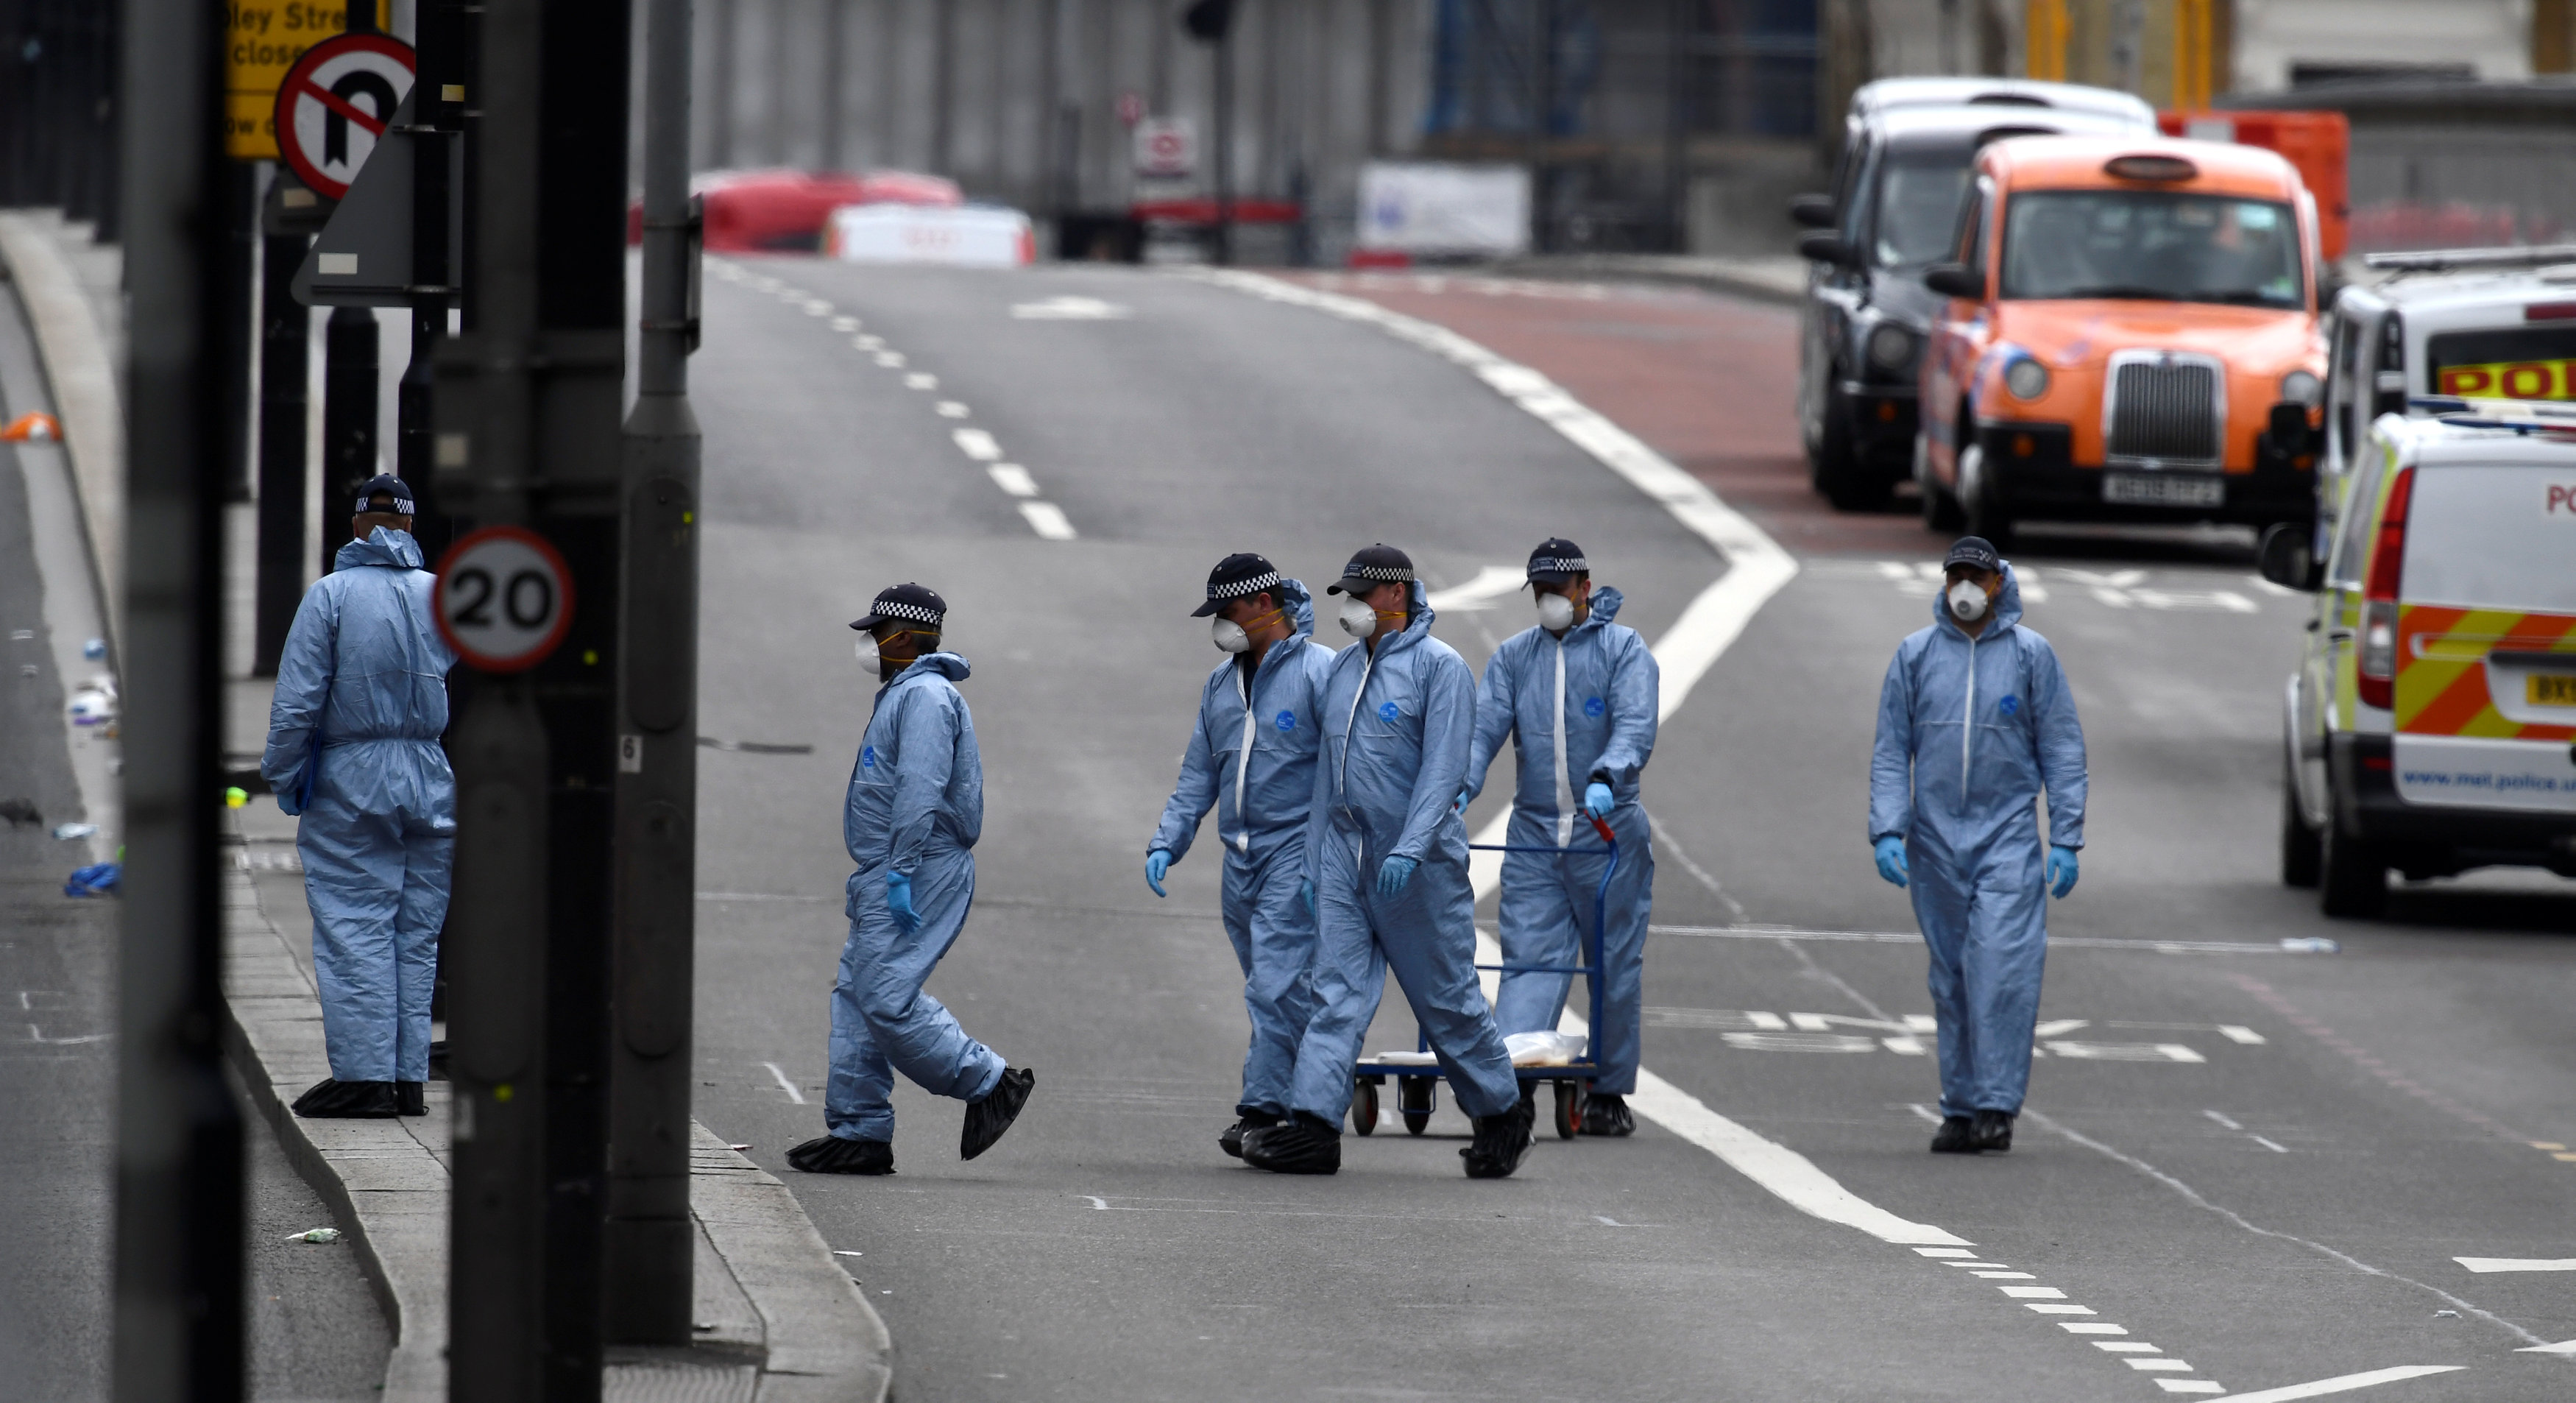 Doce detenidos por el atentado de Londres, May lo atribuye al islamismo